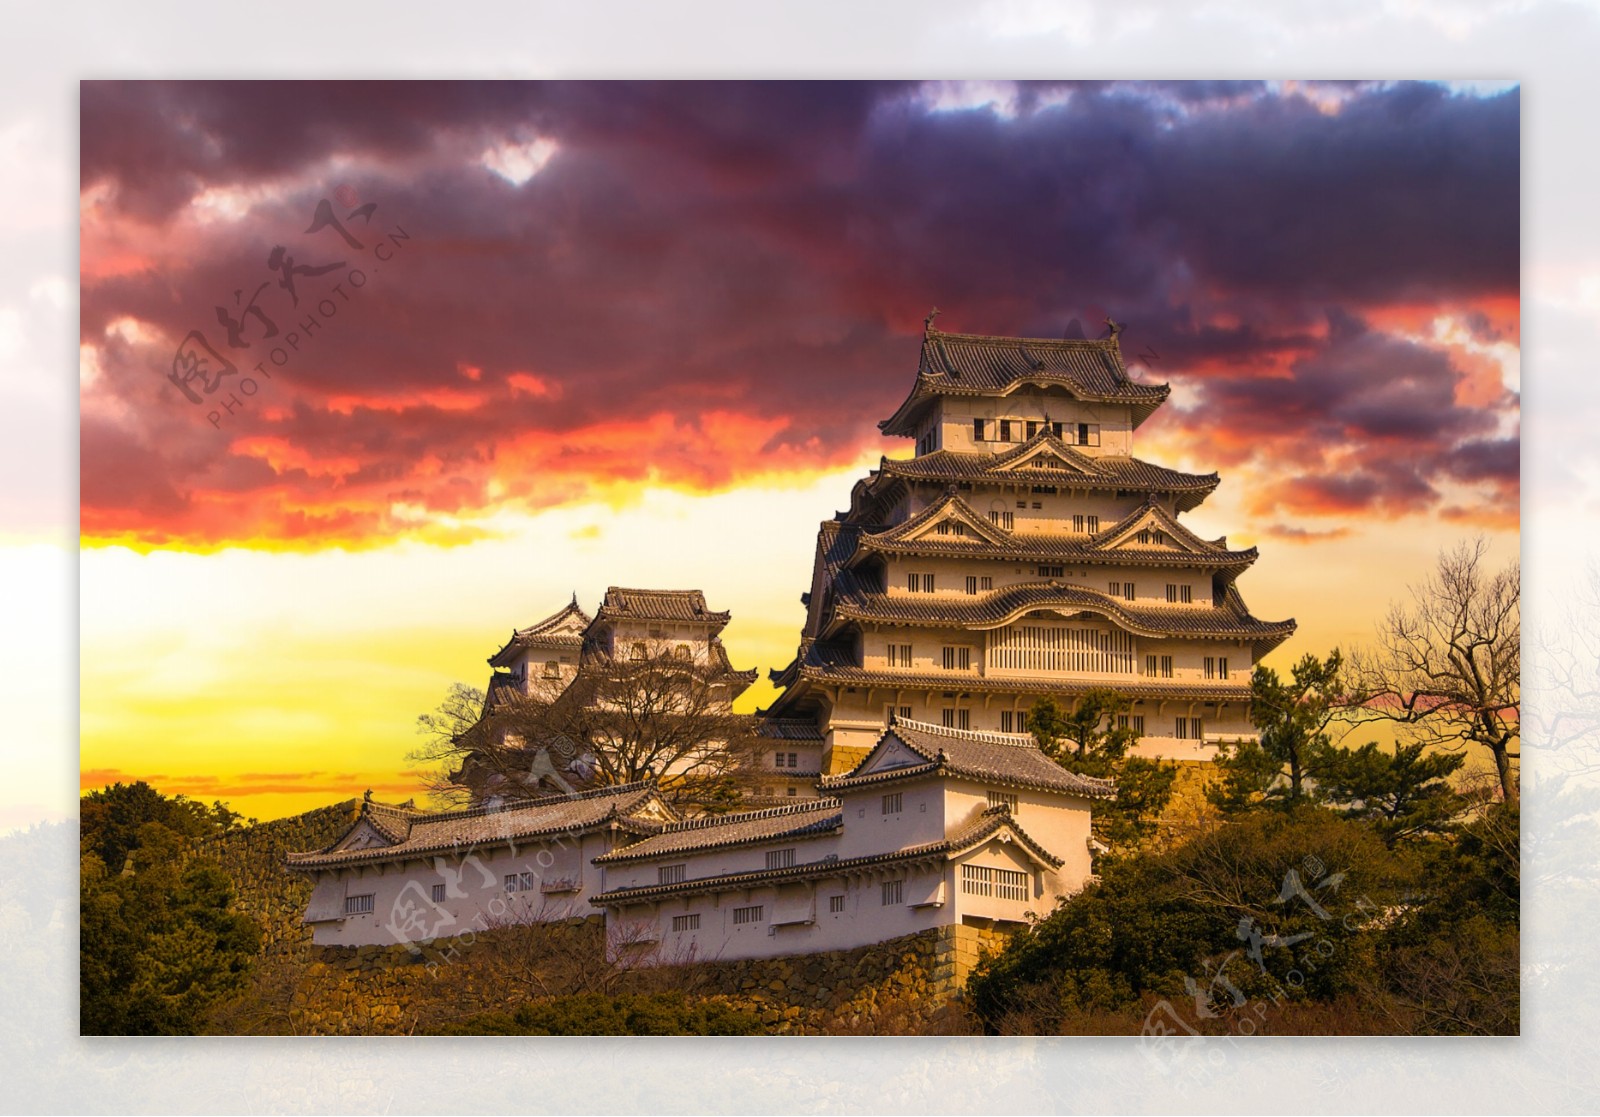 日本大阪古典建筑风景图片